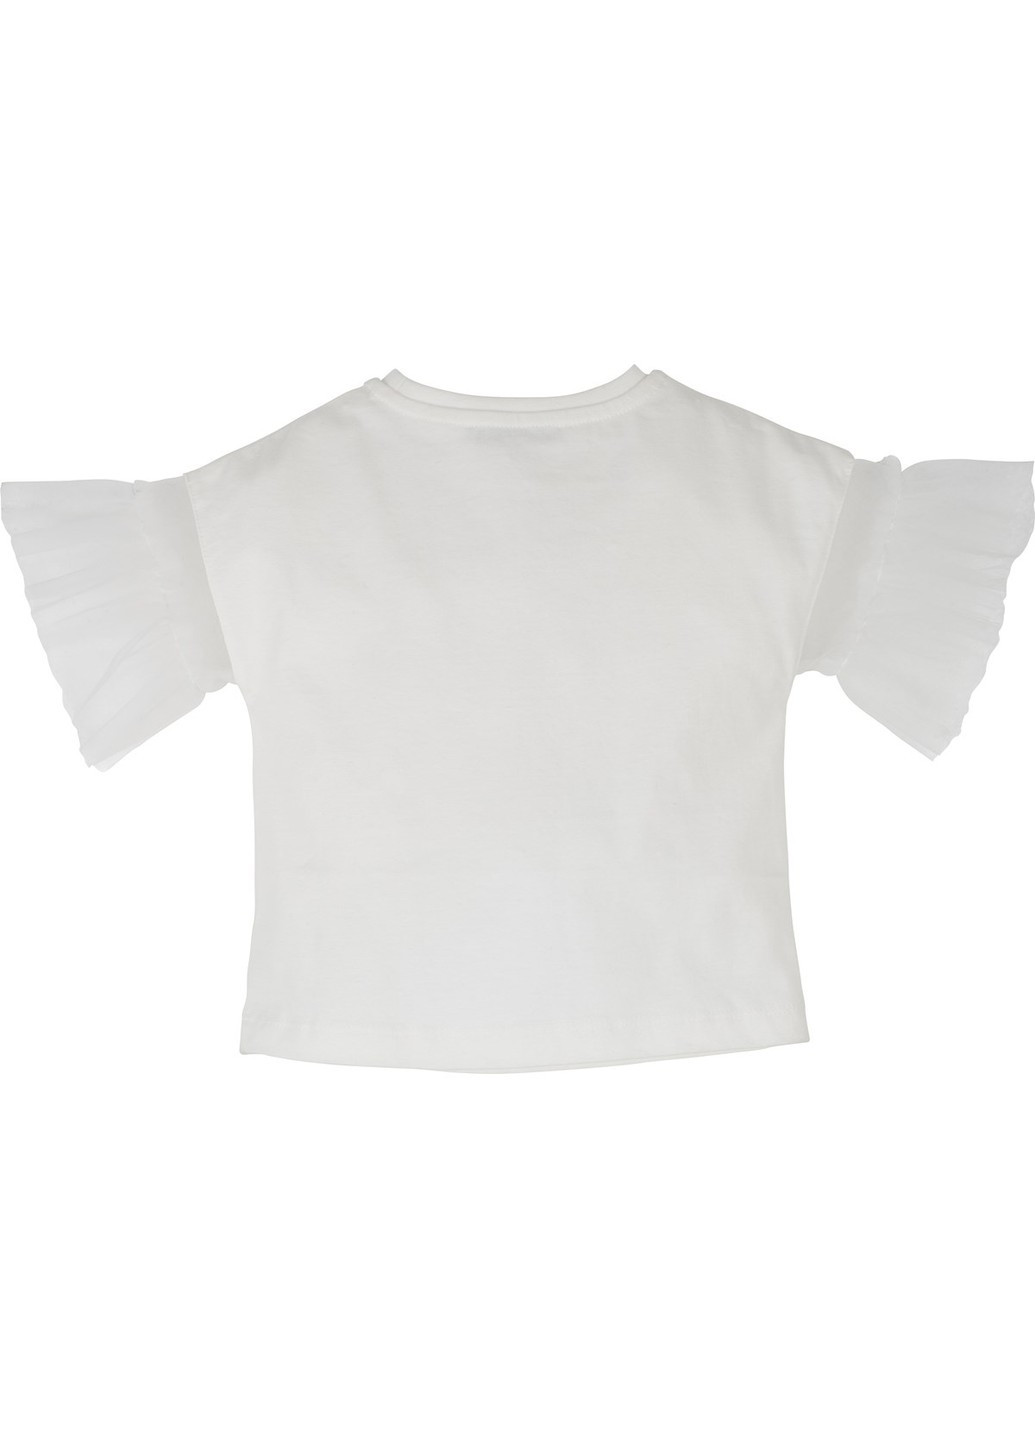 Мятный летний комплект 2 предмета (футболка+шорты) idilbaby mamino 14476 Idil Baby Mamino